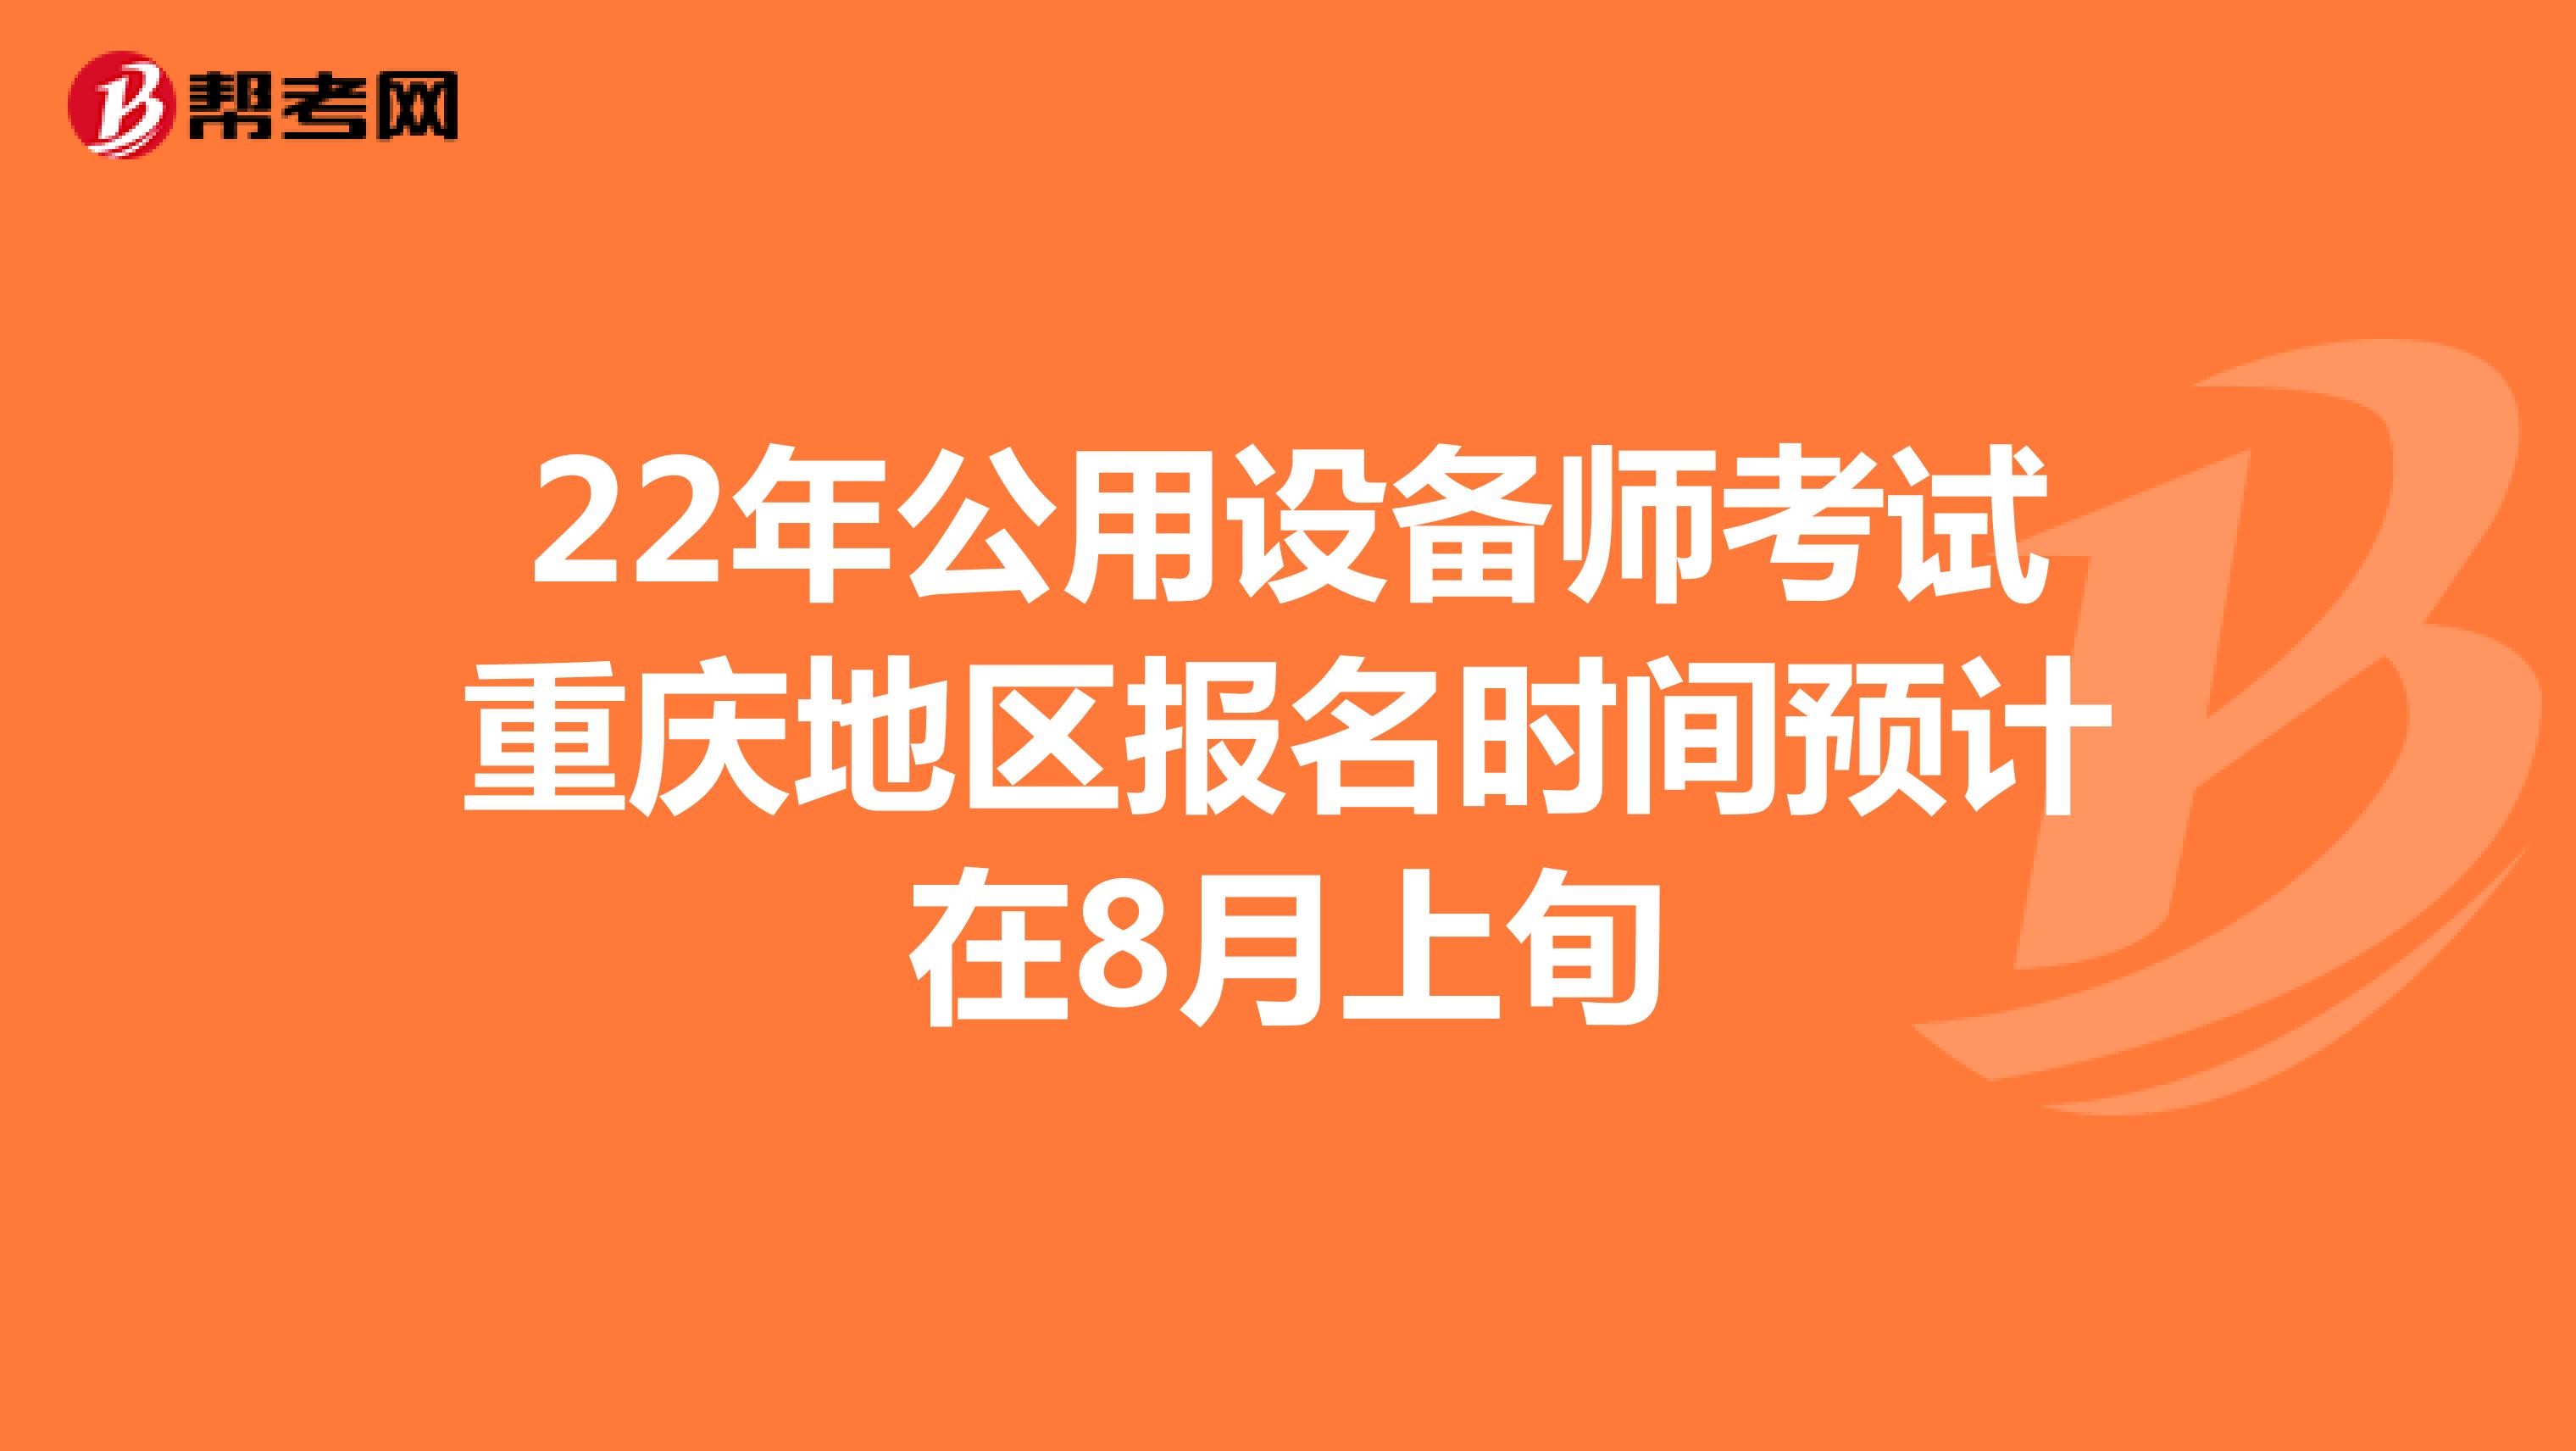 22年公用设备师考试重庆地区报名时间预计在8月上旬